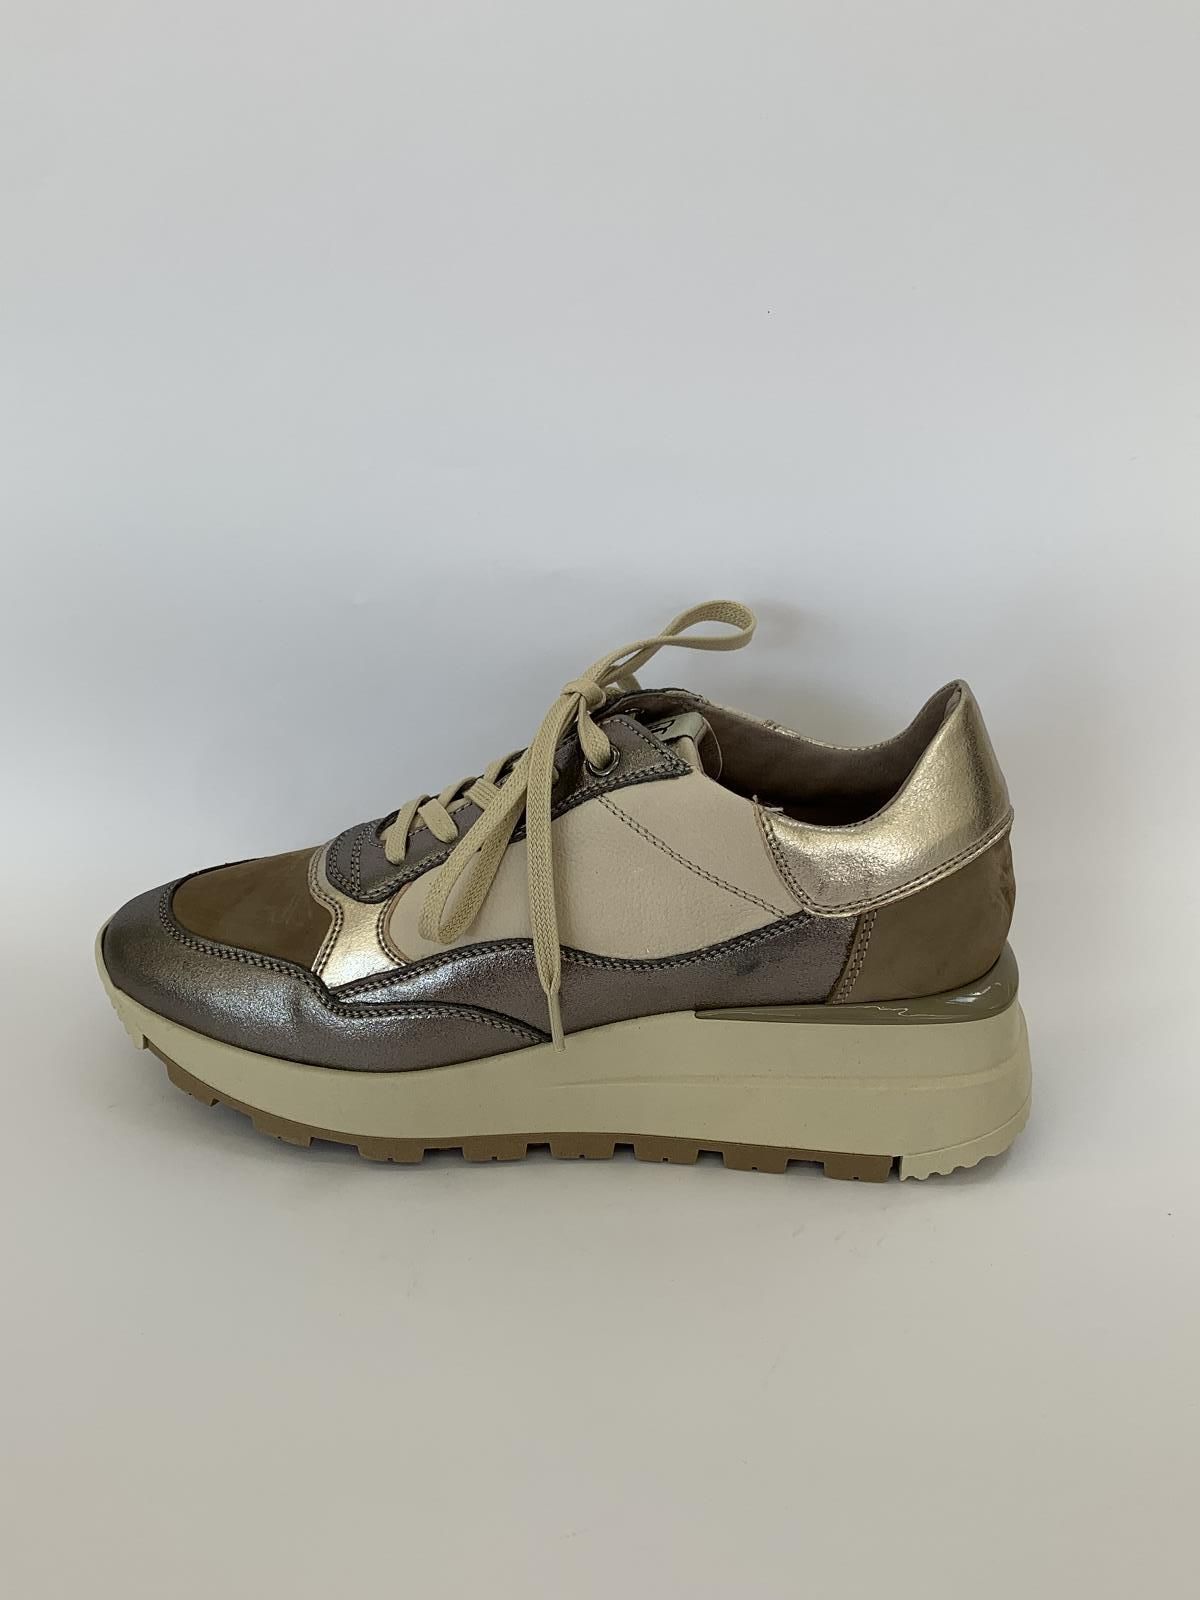 Normalisatie Bestaan Wetenschap DL Sport Sneaker Brons dames (Sneaker DL Brons - 5471) - Schoenen Luca